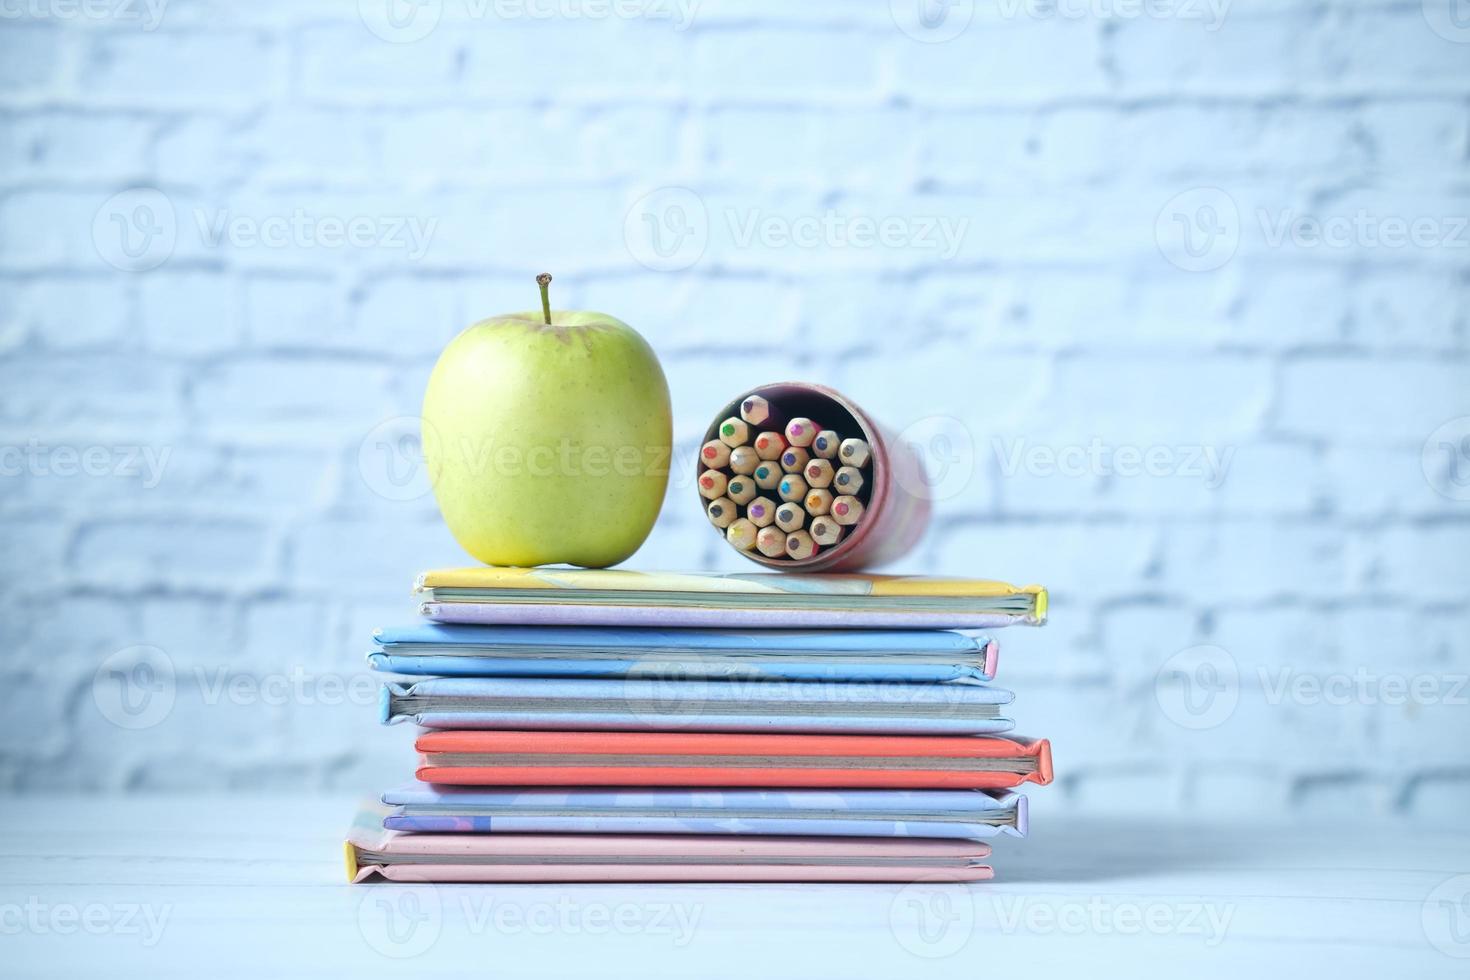 färgglada böcker, ett äpple och färgpenna på bordet foto